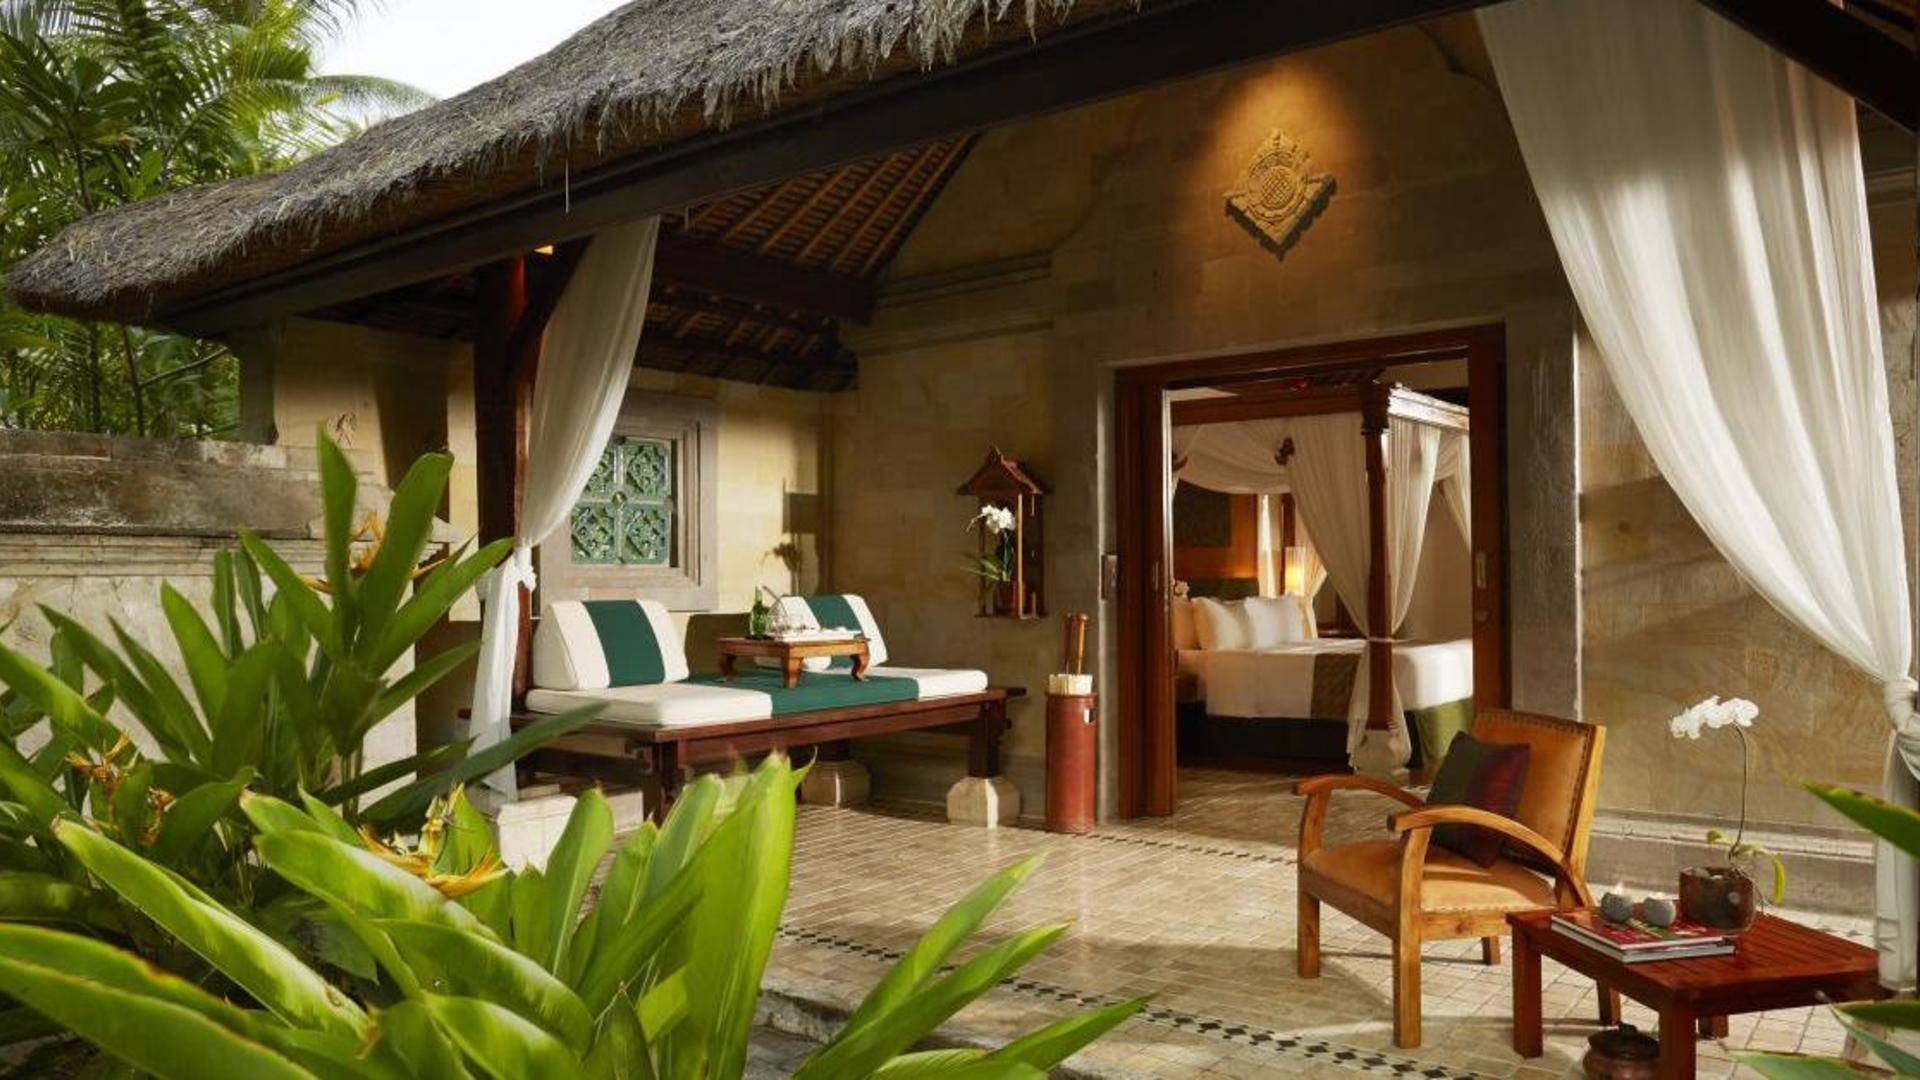 Отель bali emerald villas 5***** (санур / индонезия) - отзывы туристов о гостинице описание номеров с фото